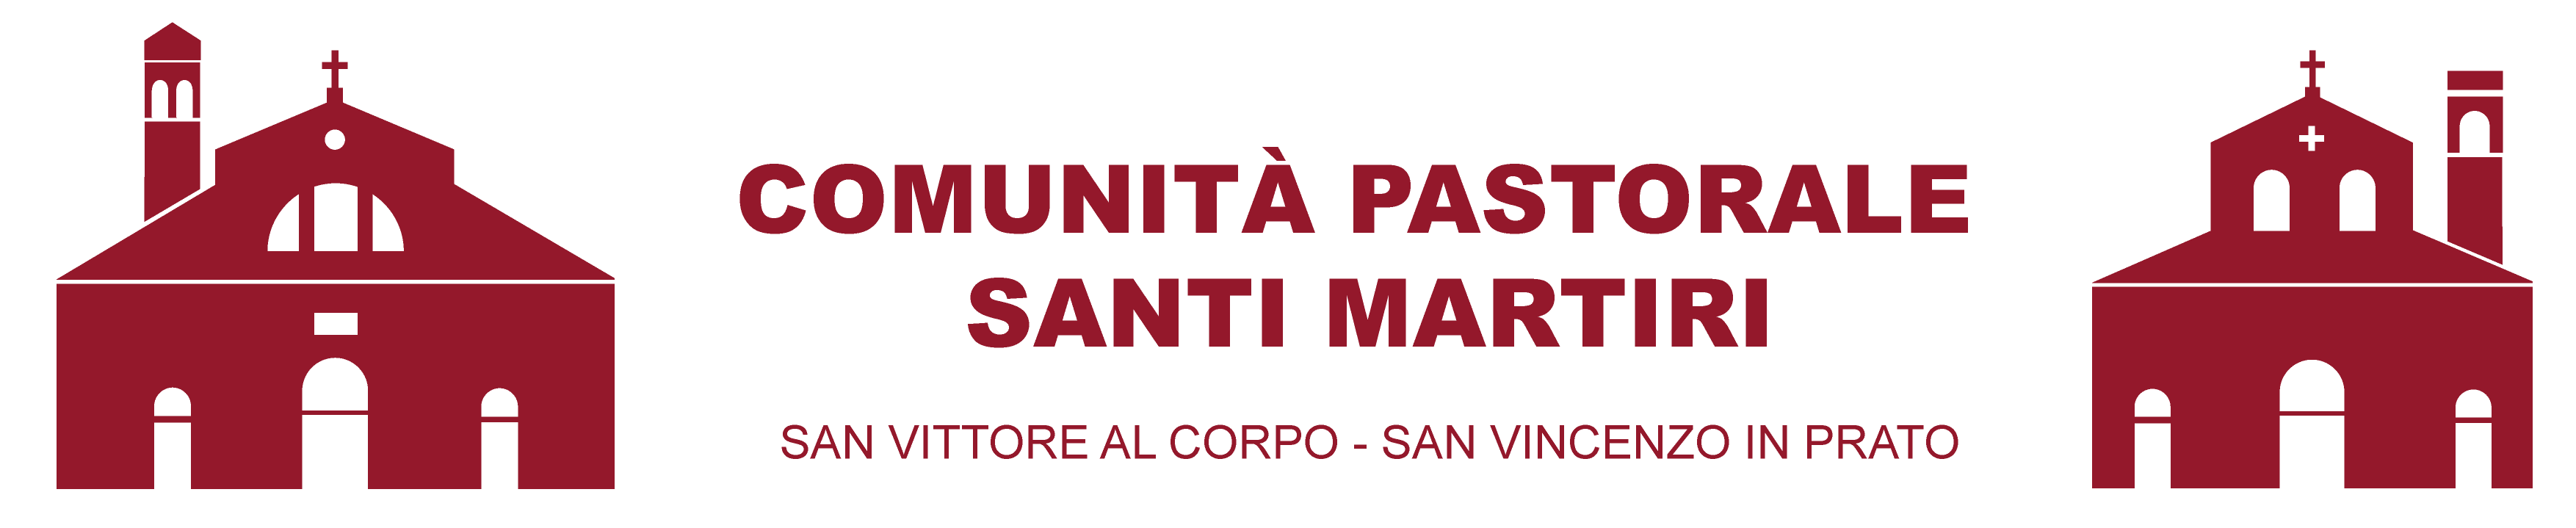 Comunità Pastorale Santi Martiri Milano